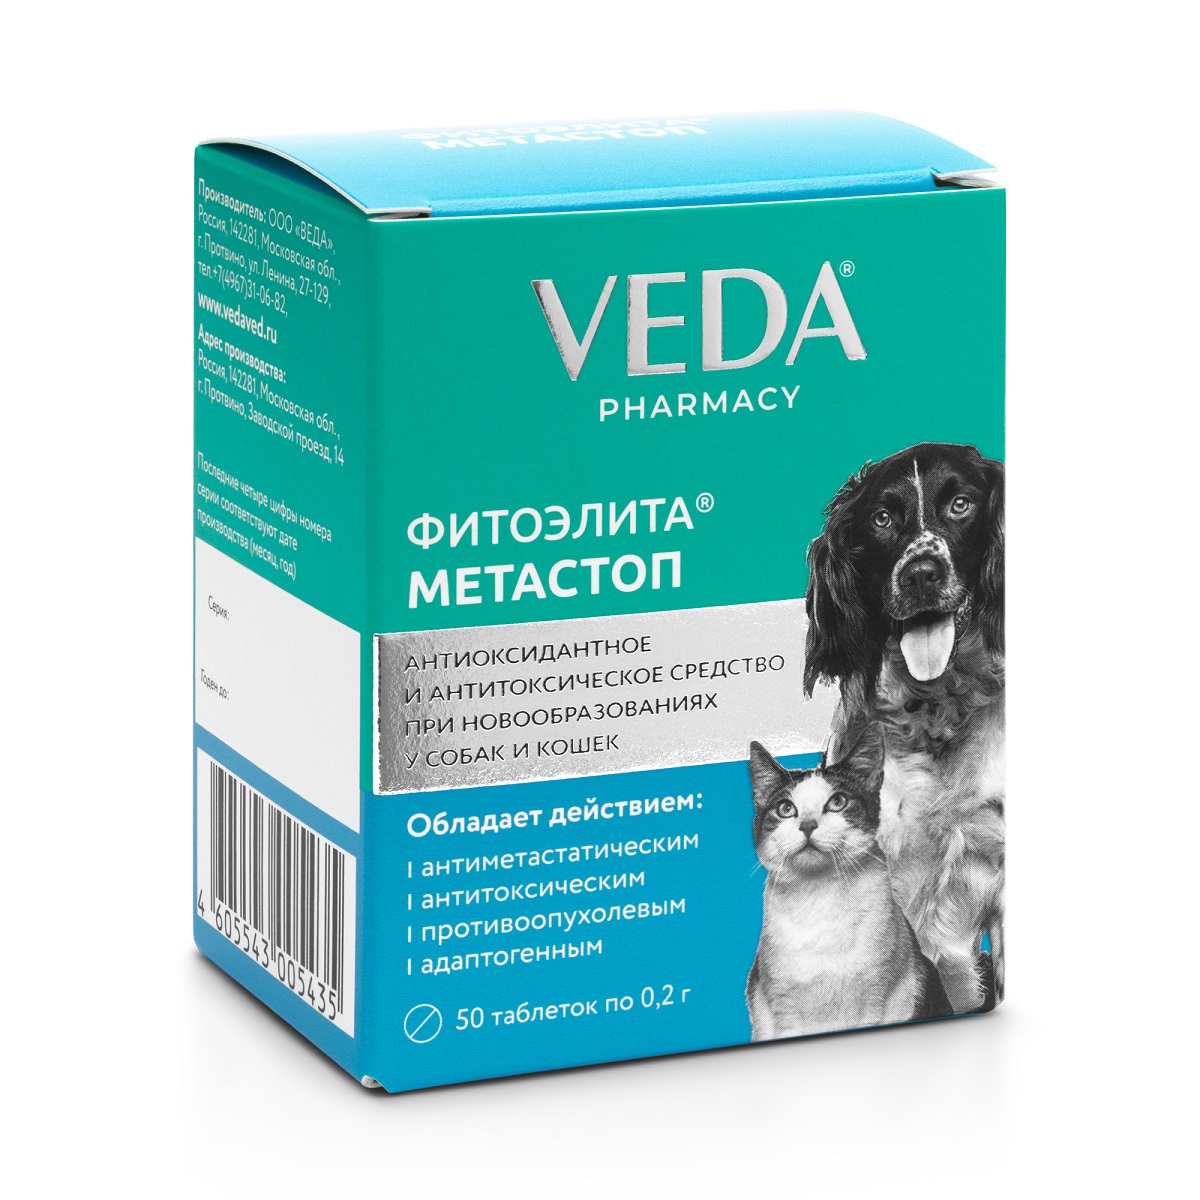 Синуксол для собак 500. Таблетки для собак Метастоп. Veda таблетки для кошек. Метастоп для кошек. Фитоэлита Метастоп д/кошек и собак.